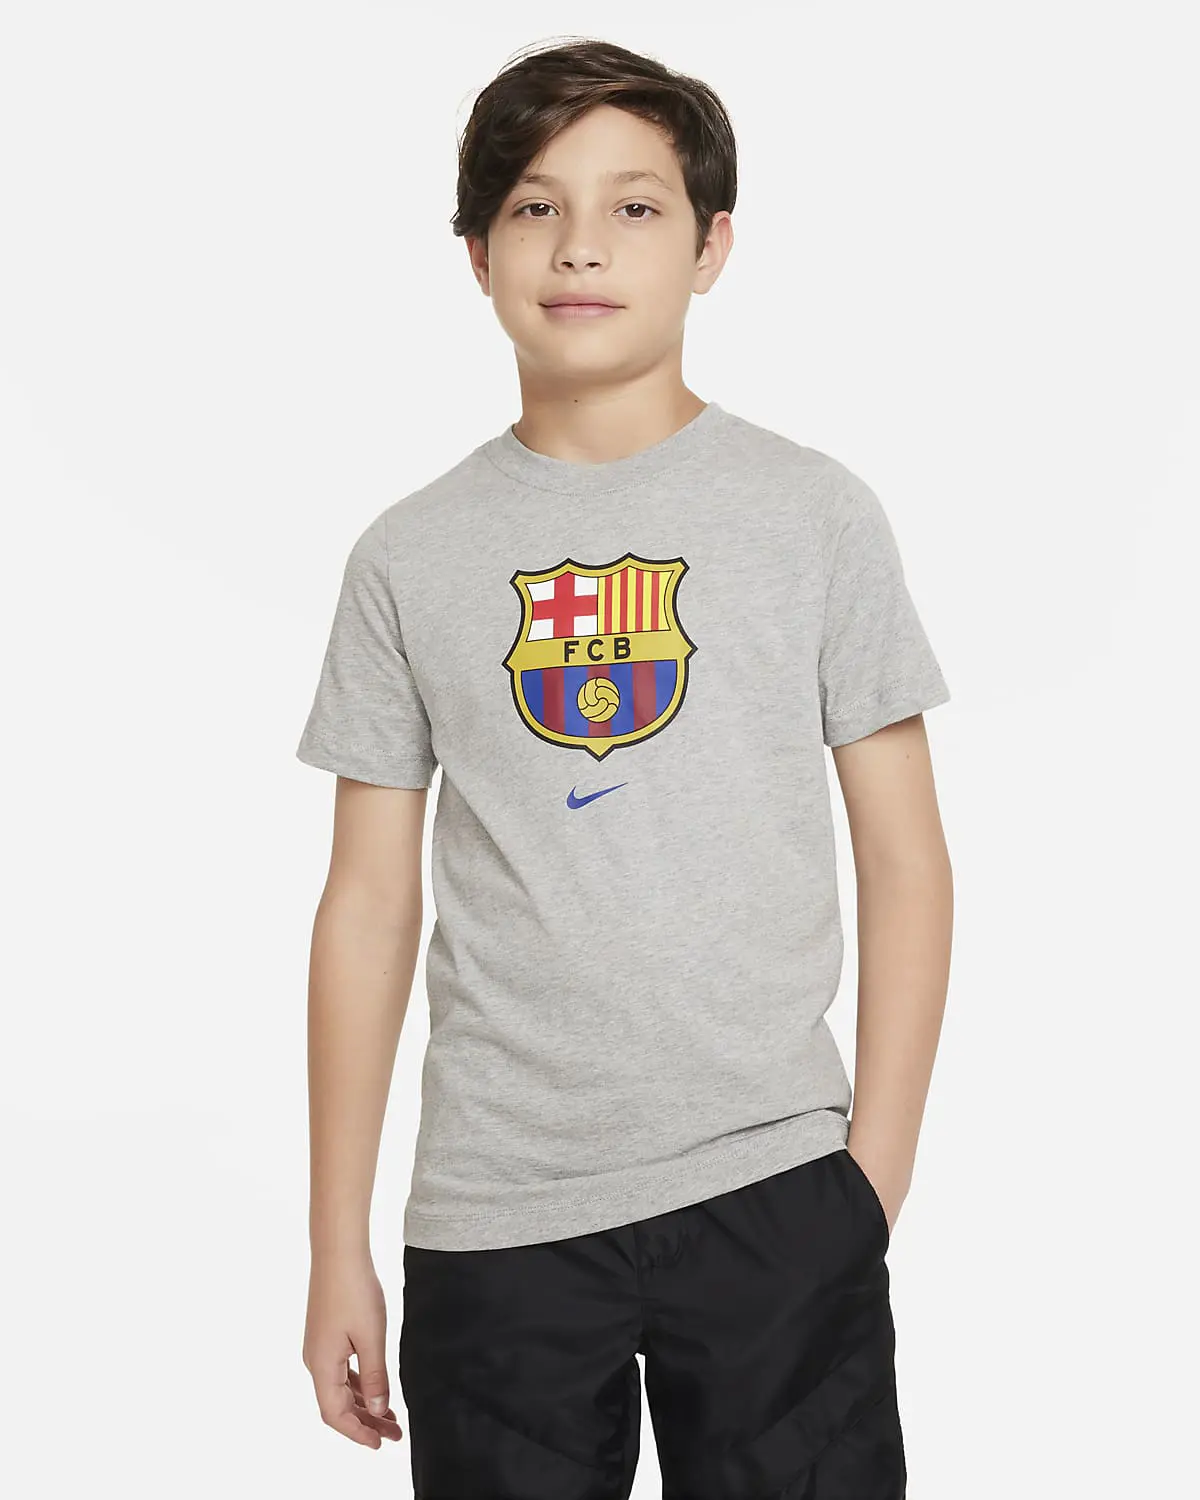 Nike F.C. Barcelona Crest. 1